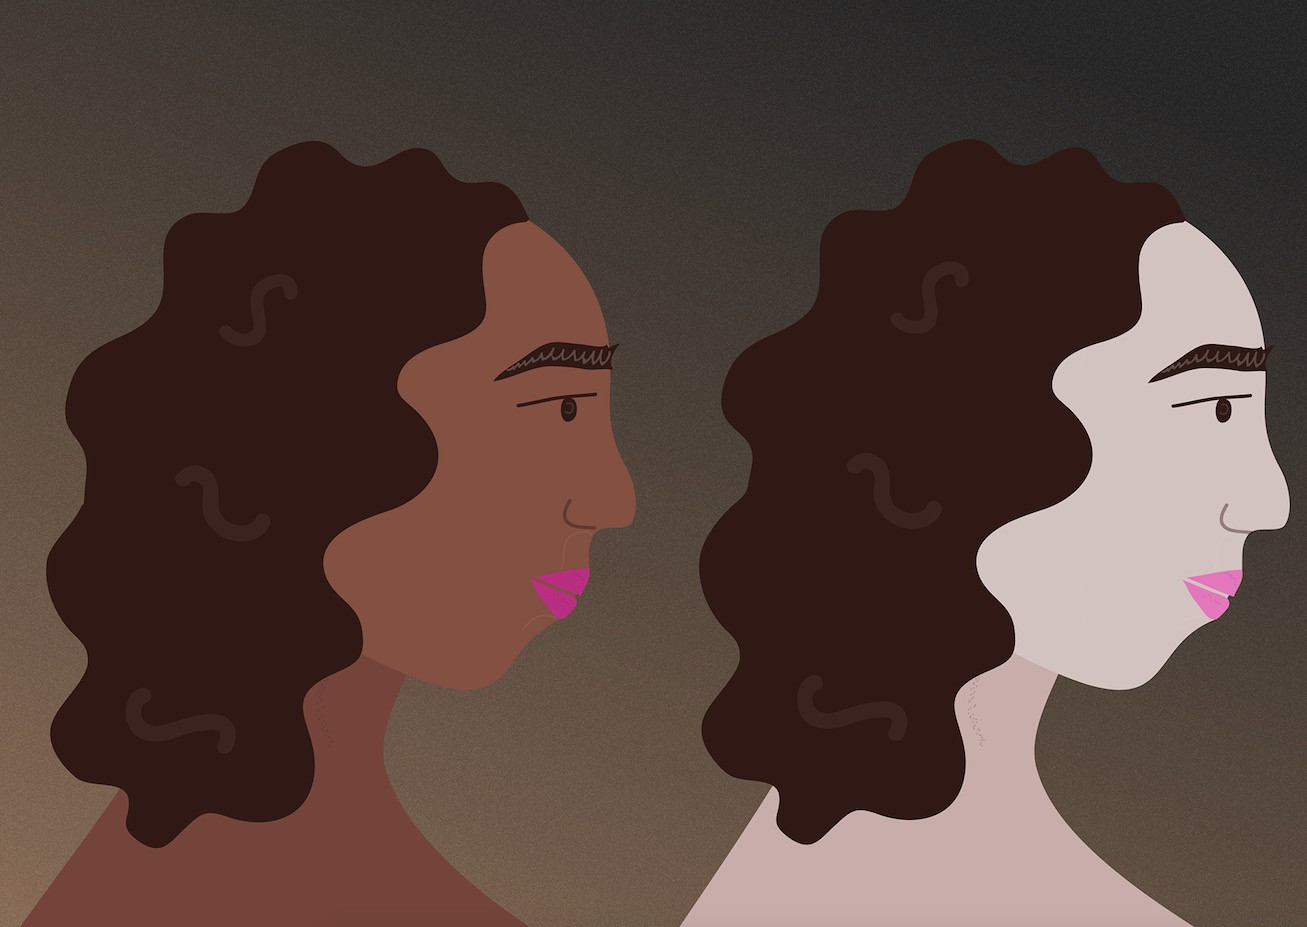 Ρατσιστική μόδα και στερεότυπα: Γιατί Ινδές θέλουν να αλλάξουν το χρώμα του δέρματός τους;